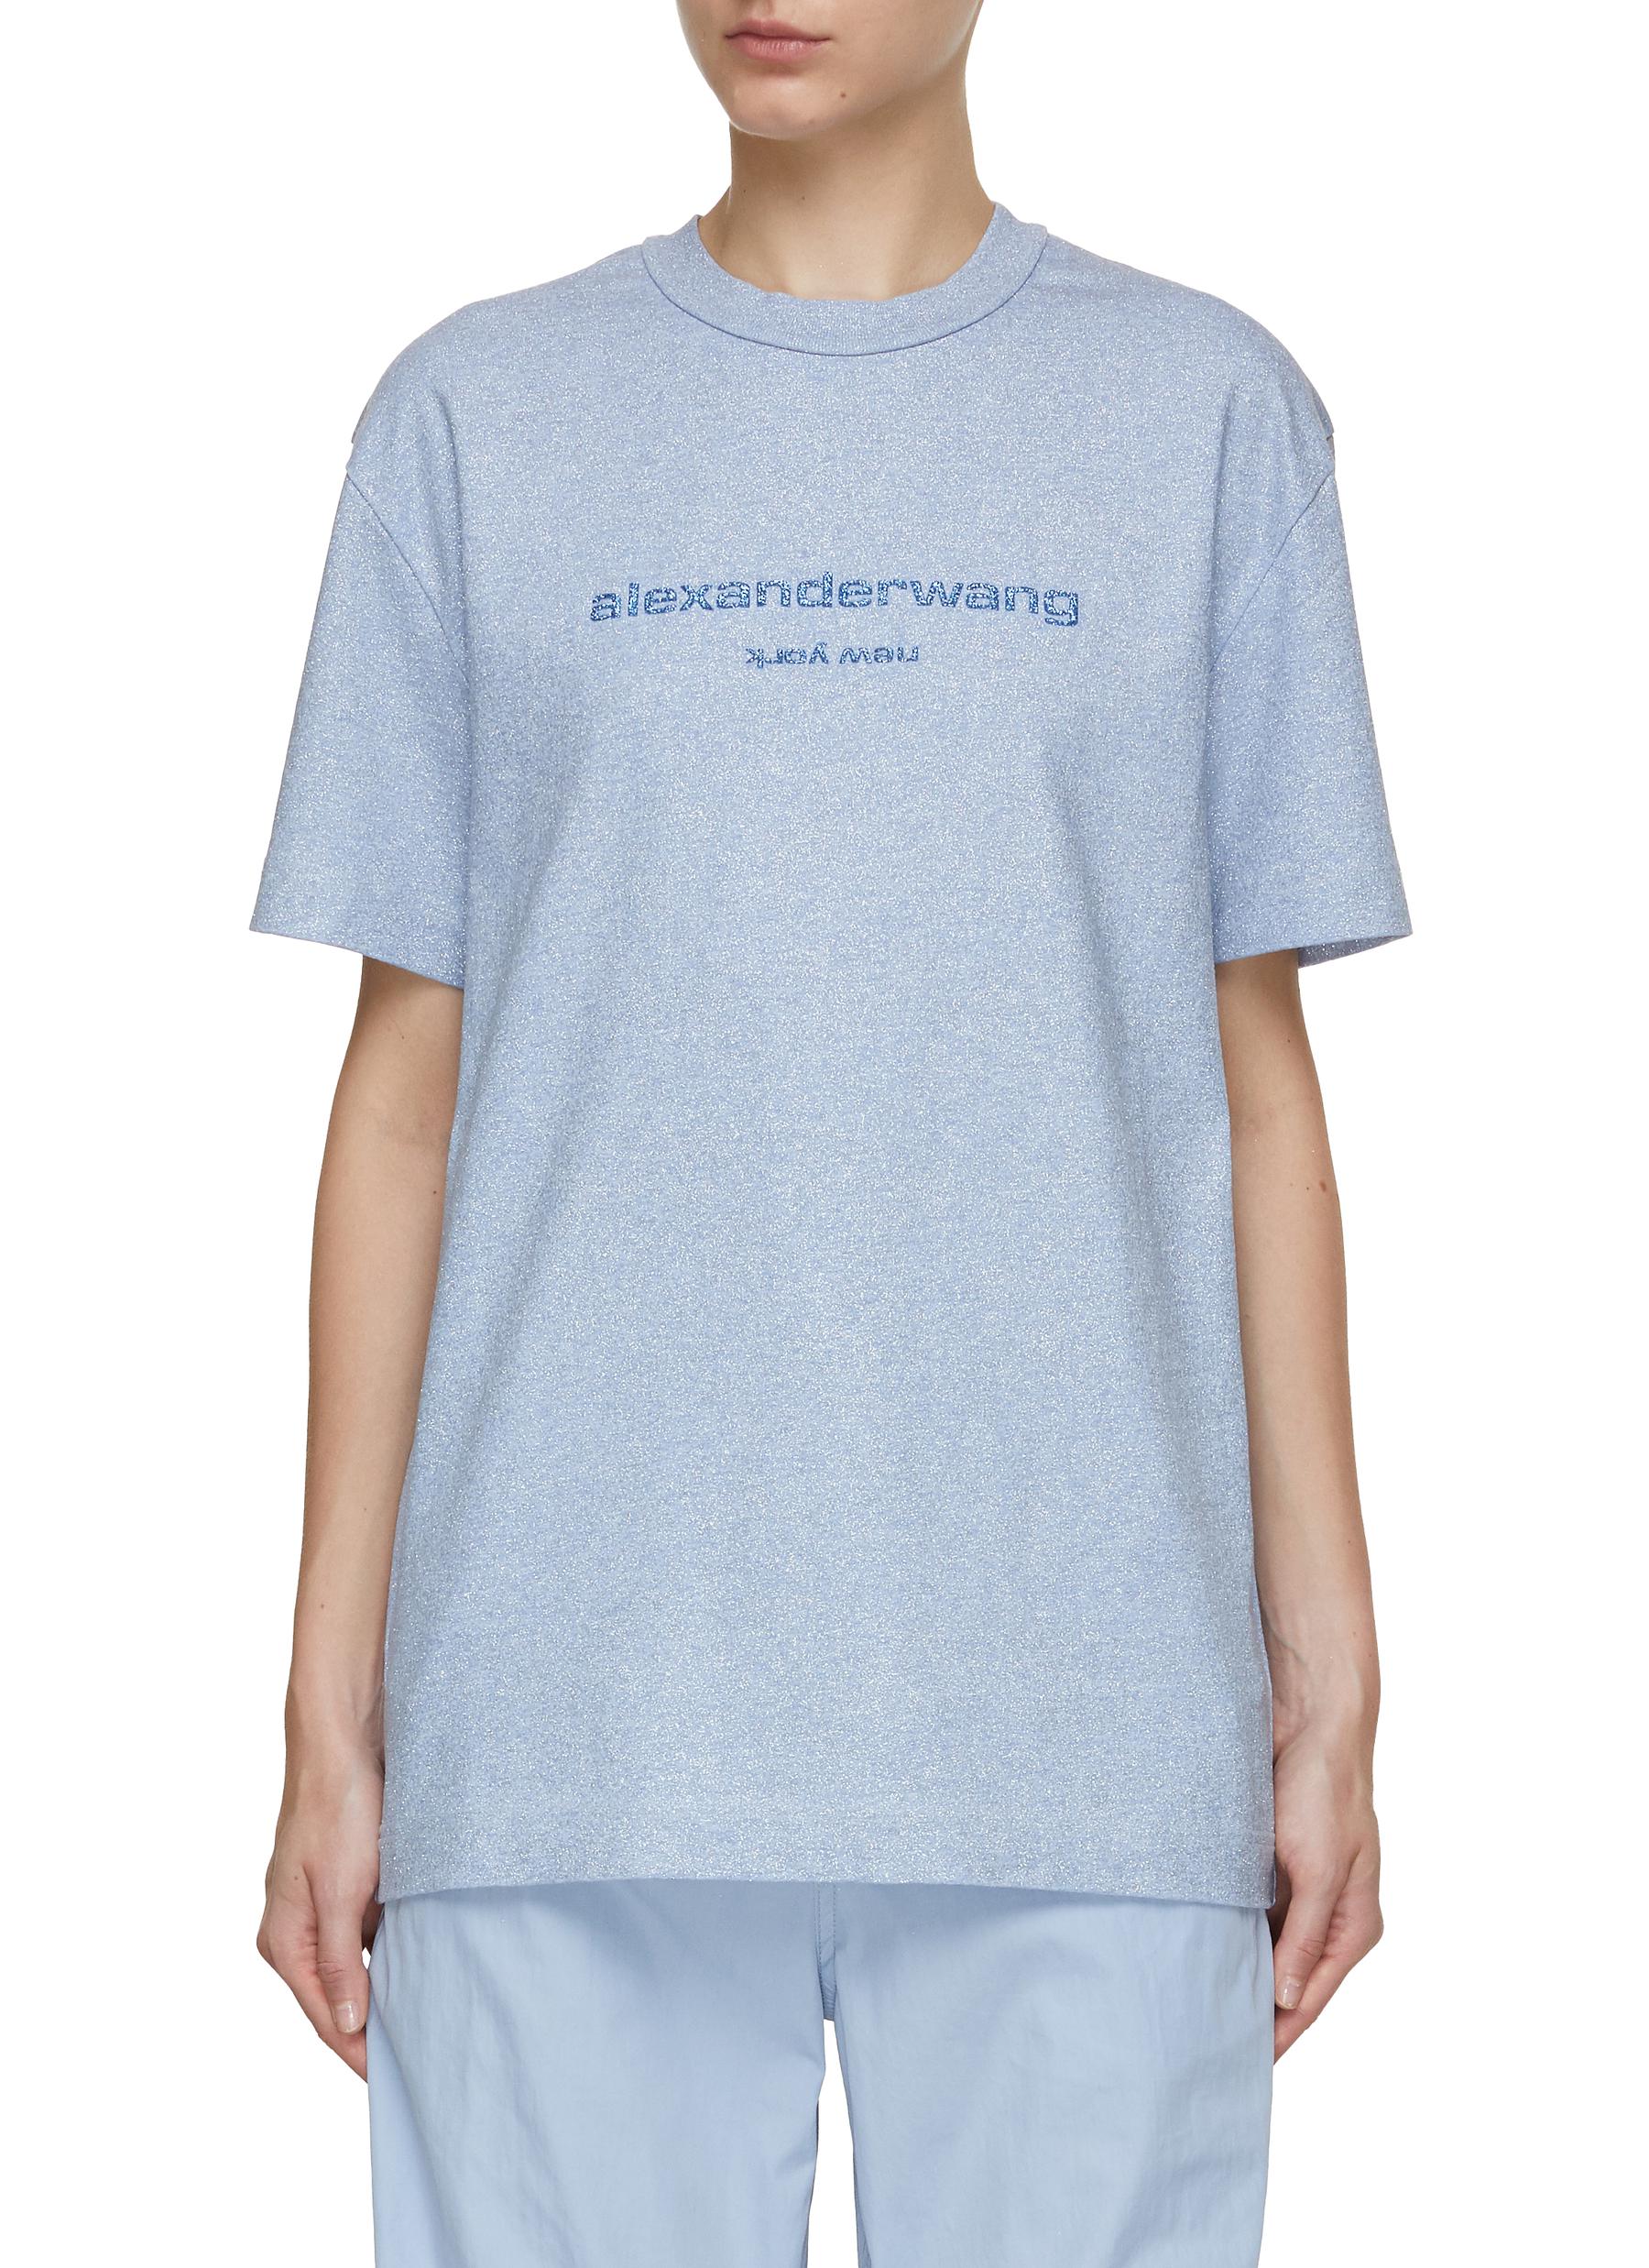 ALEXANDER WANG | Glittered Logo T-Shirt | LIGHT BLUE | Women